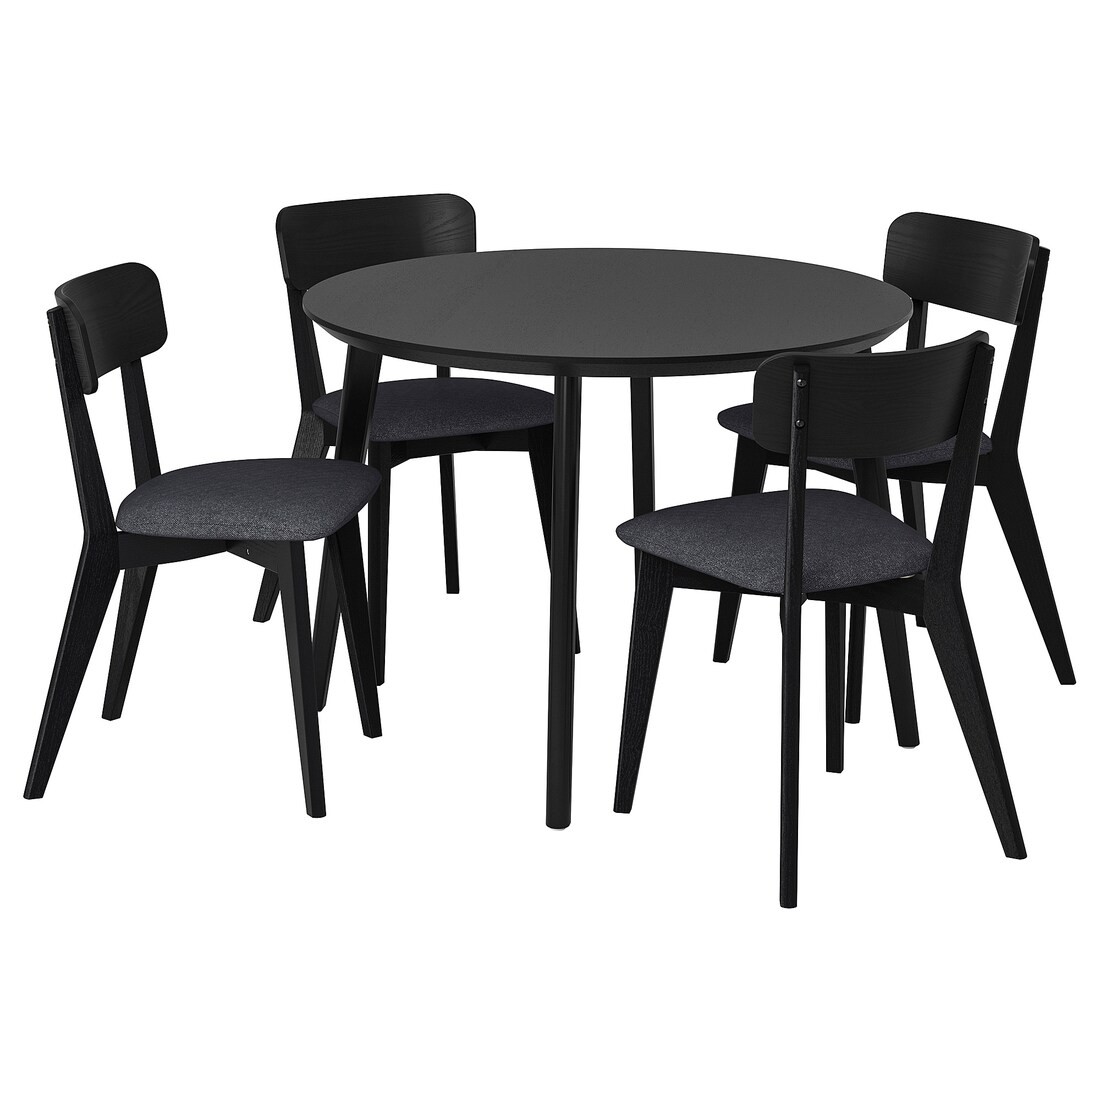 LISABO / LISABO Стол и 4 стула, черный / тальмира черный / серый, 105 см